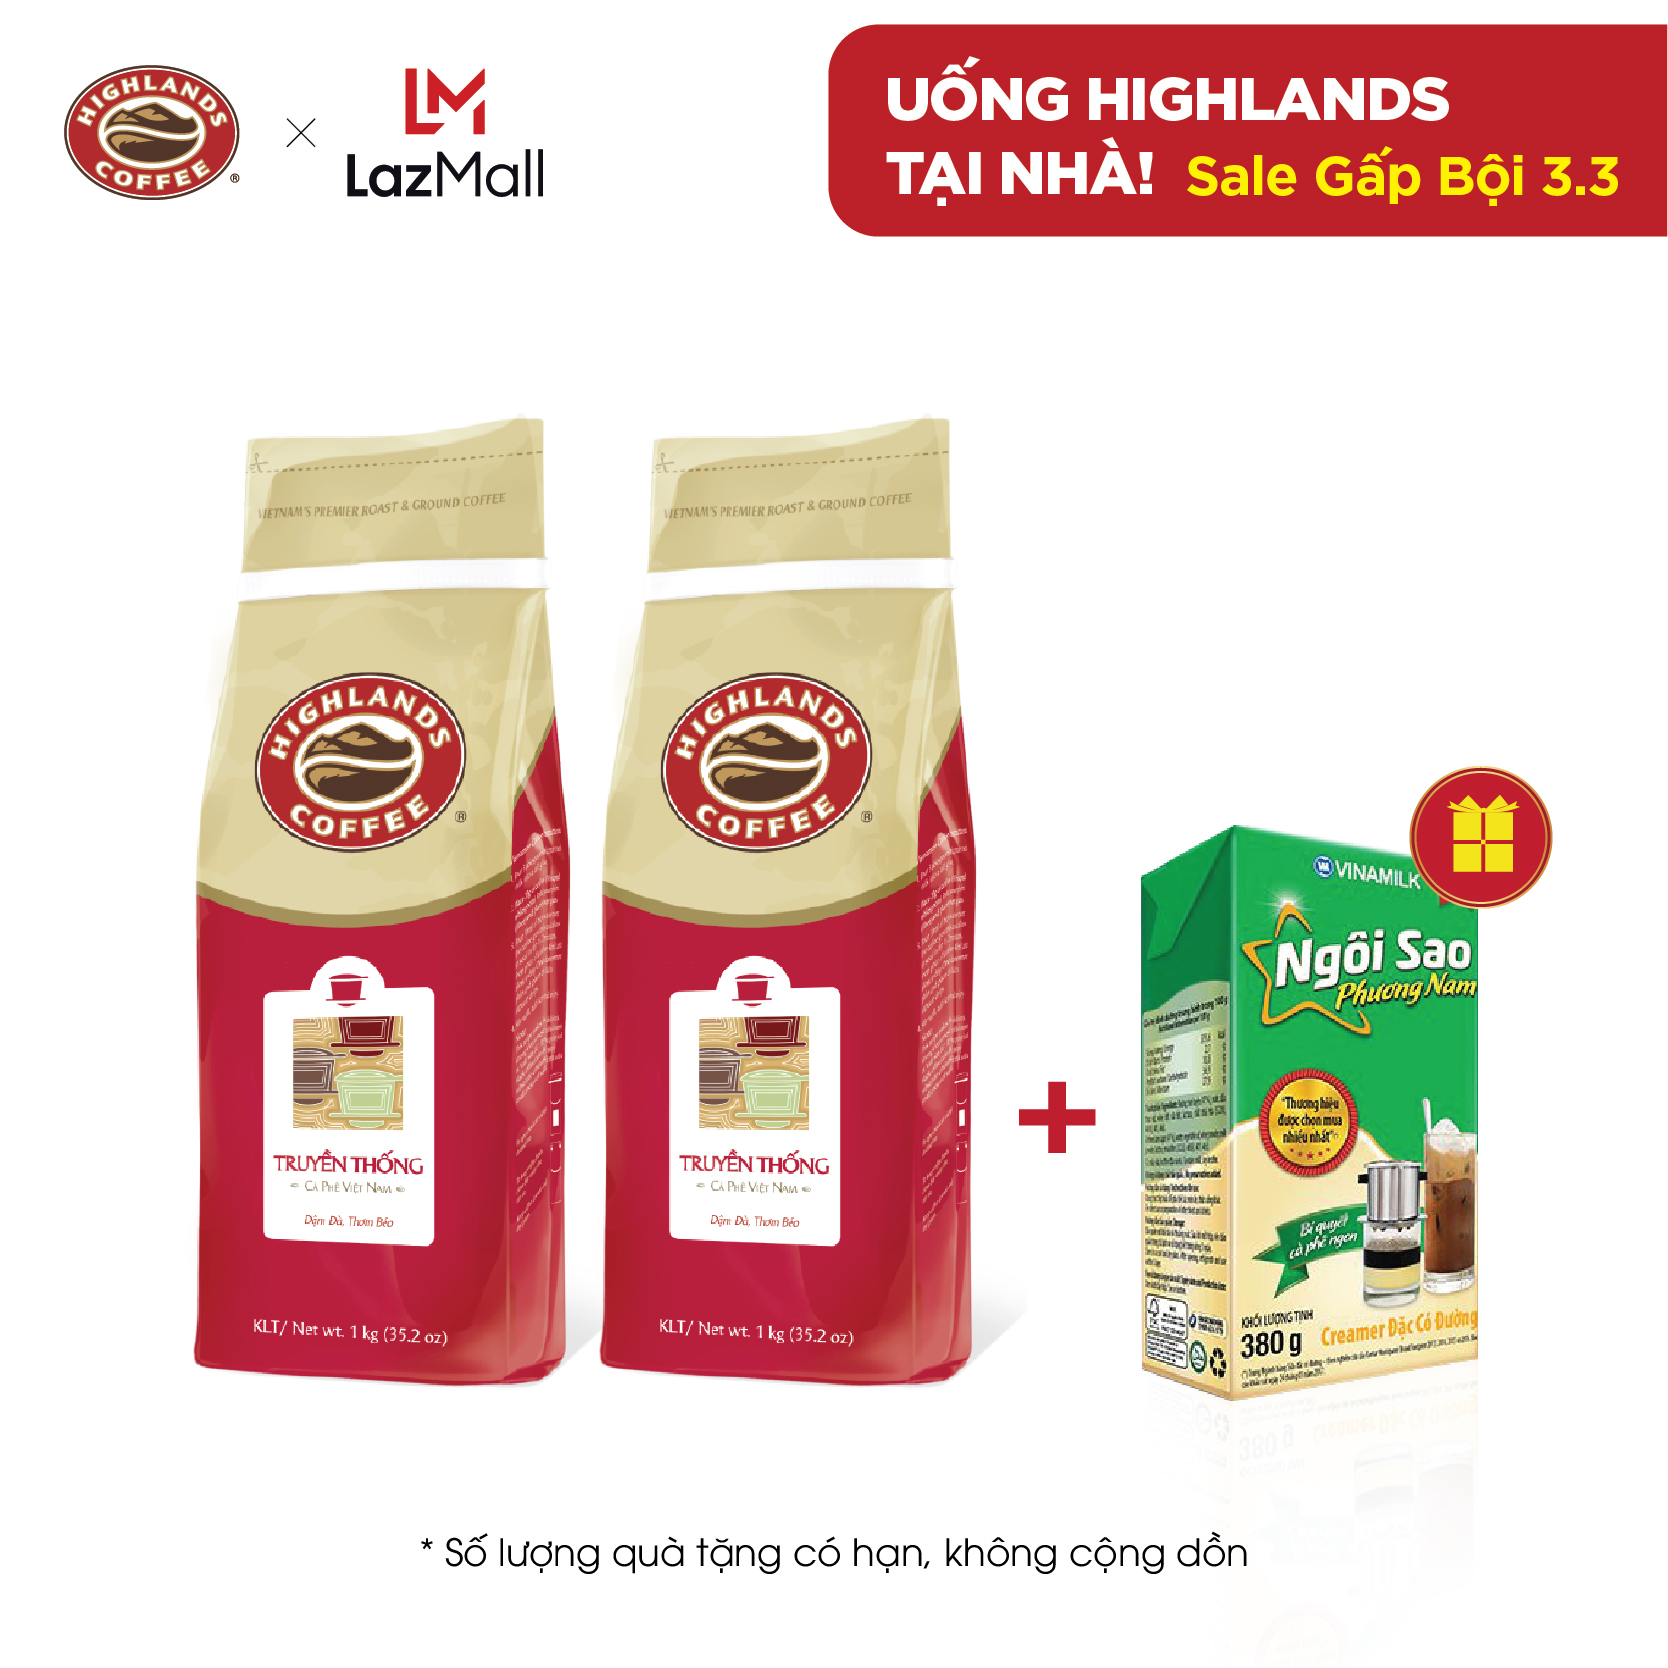 [TẶNG 1 HỘP SỮA TỪ 3-7.3] COMBO 2 Túi Cà phê bột Truyền thống Highlands Coffee 1kg (số lượng có hạn và không cộng dồn quà tặng)